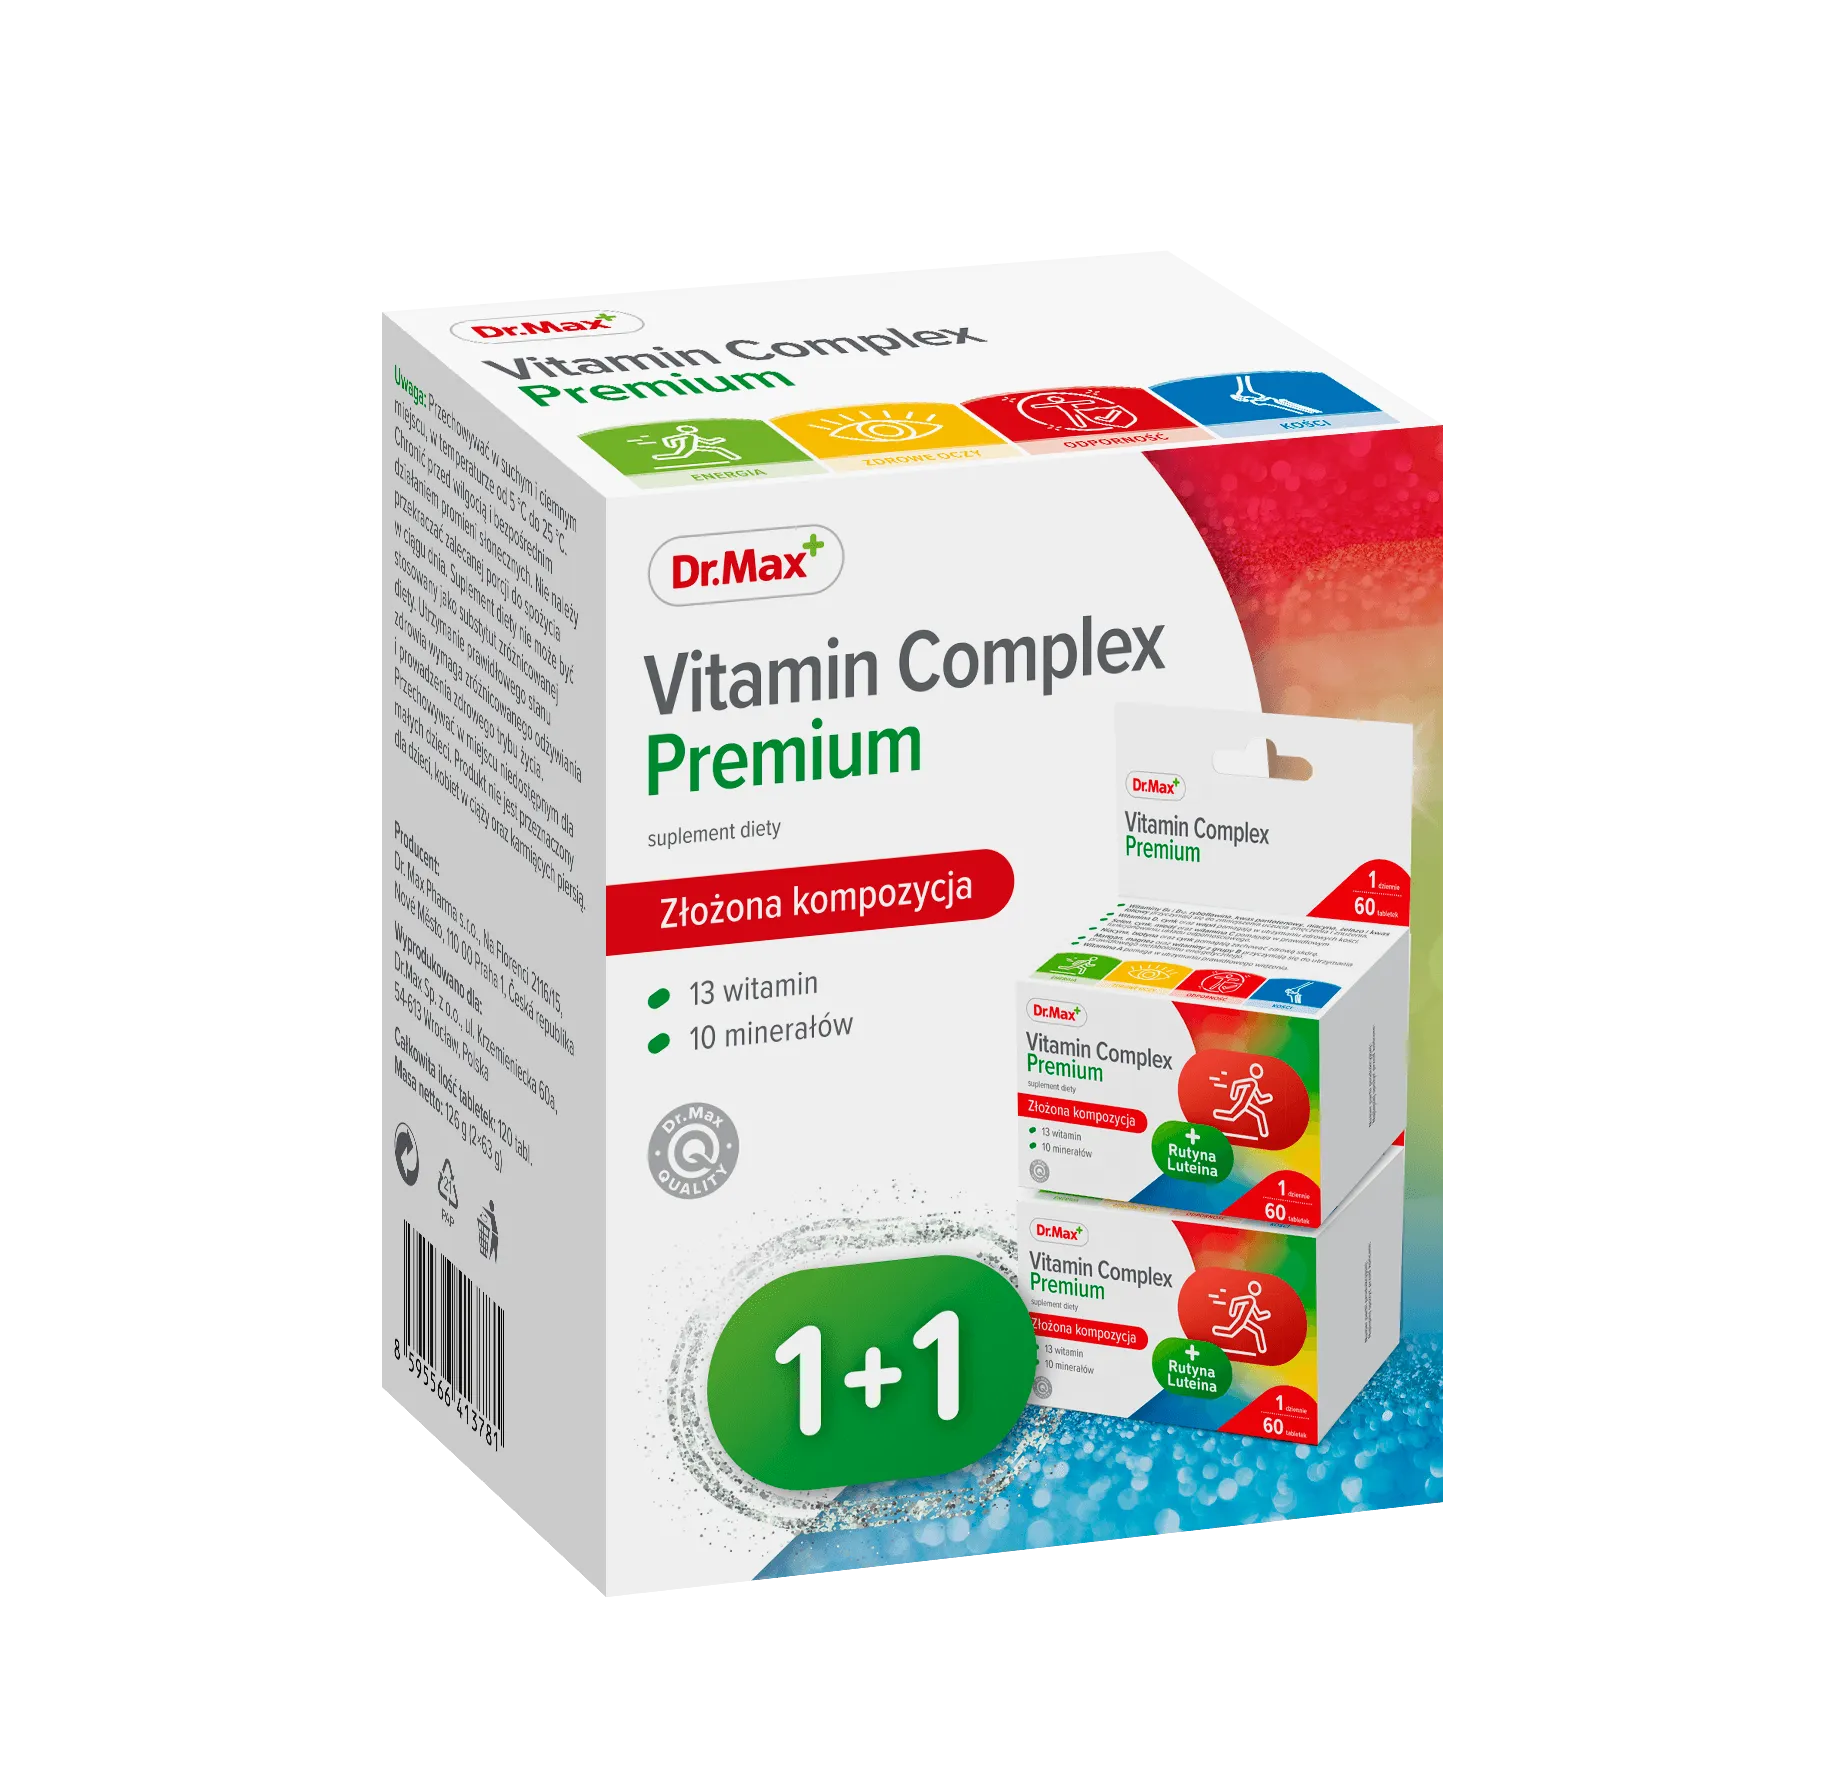 Vitamin Complex Premium Dr.Max, suplement diety, 2 x 60 tabletek